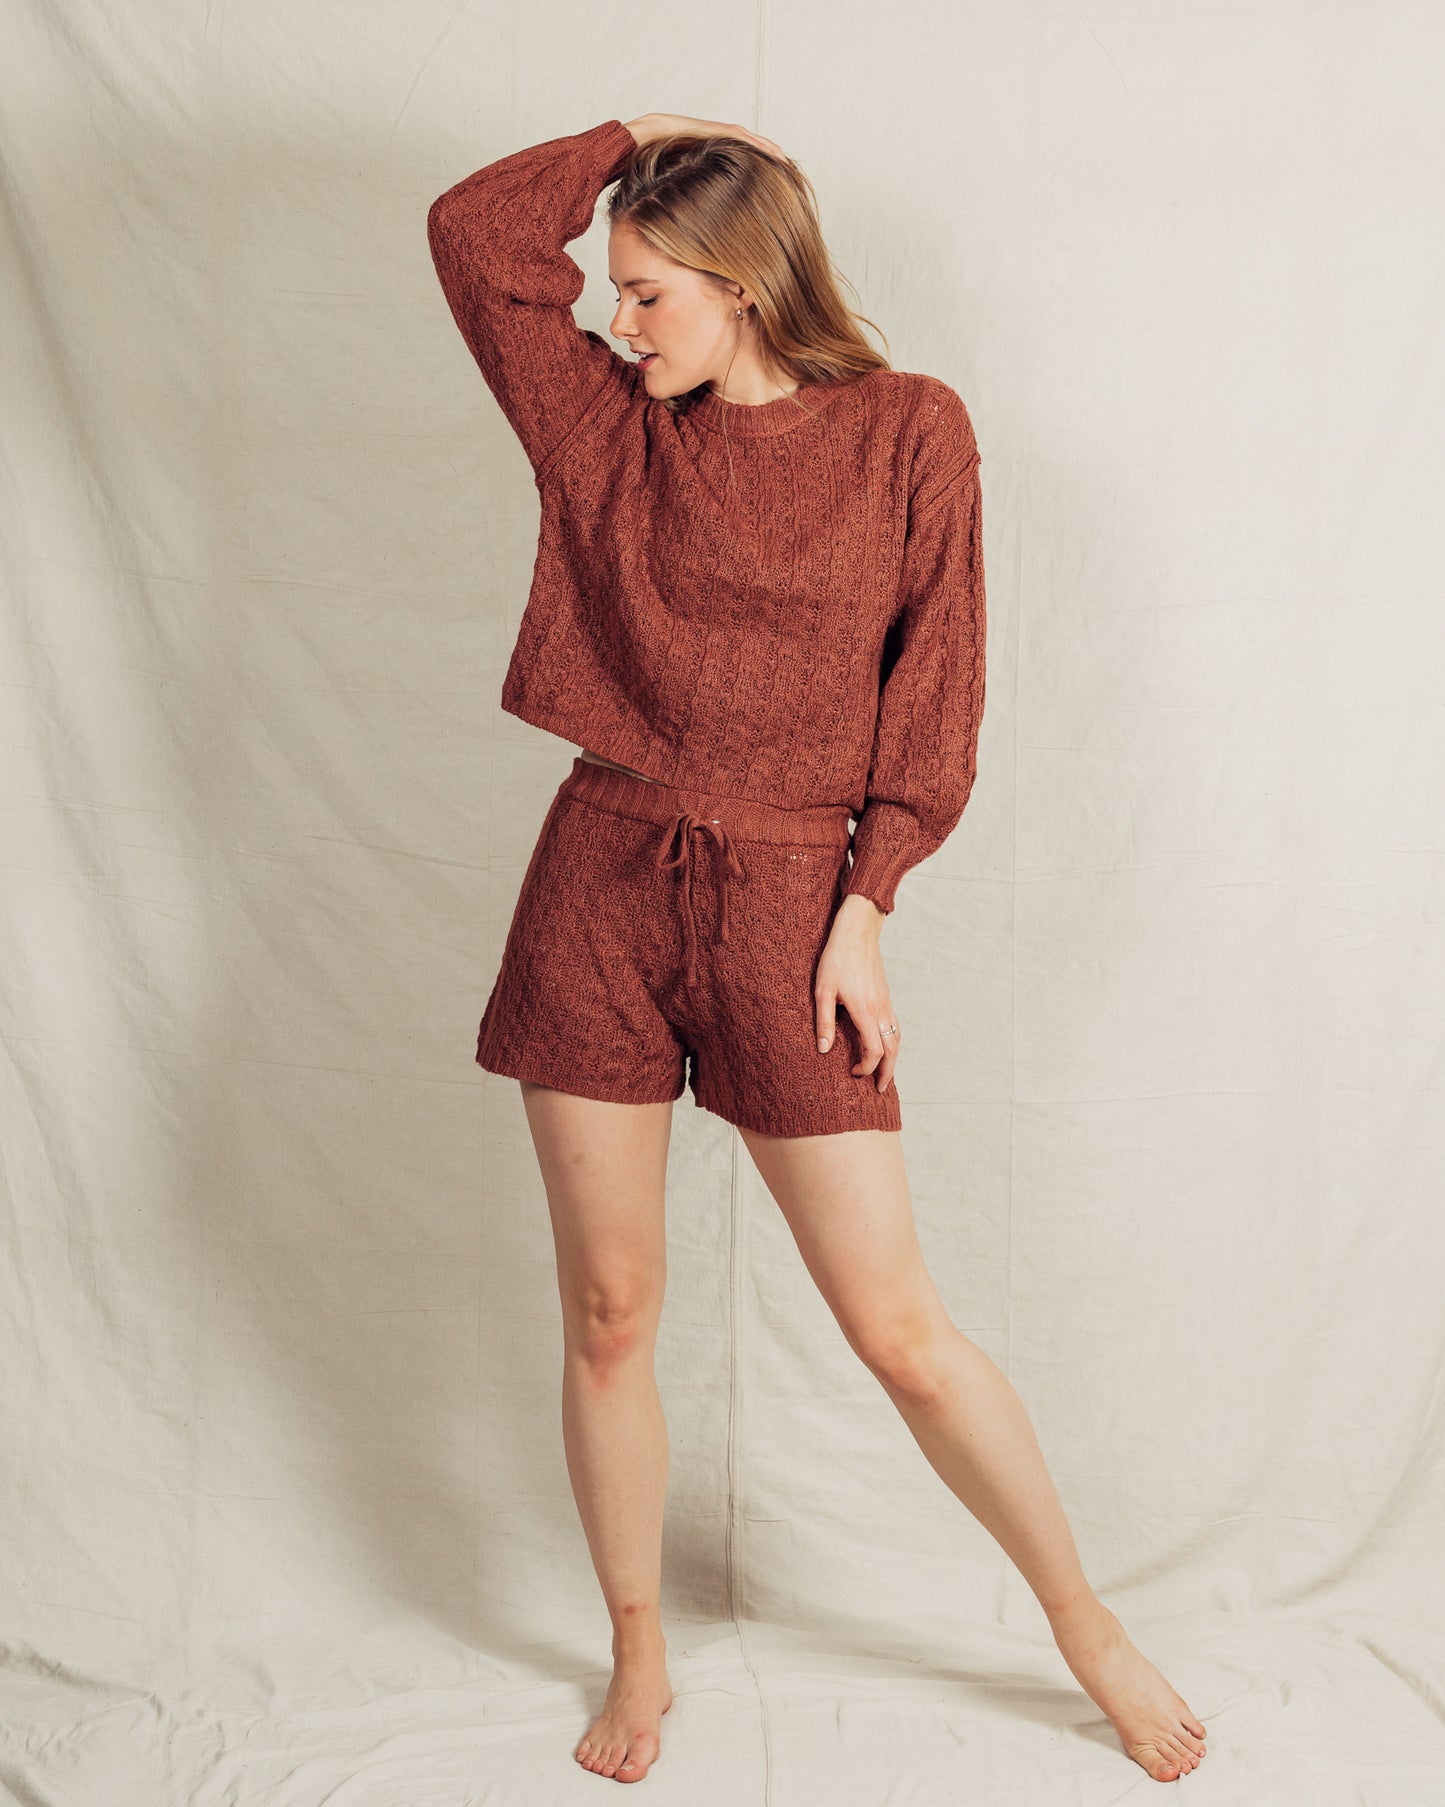 Rikaela Sweater + Short Set